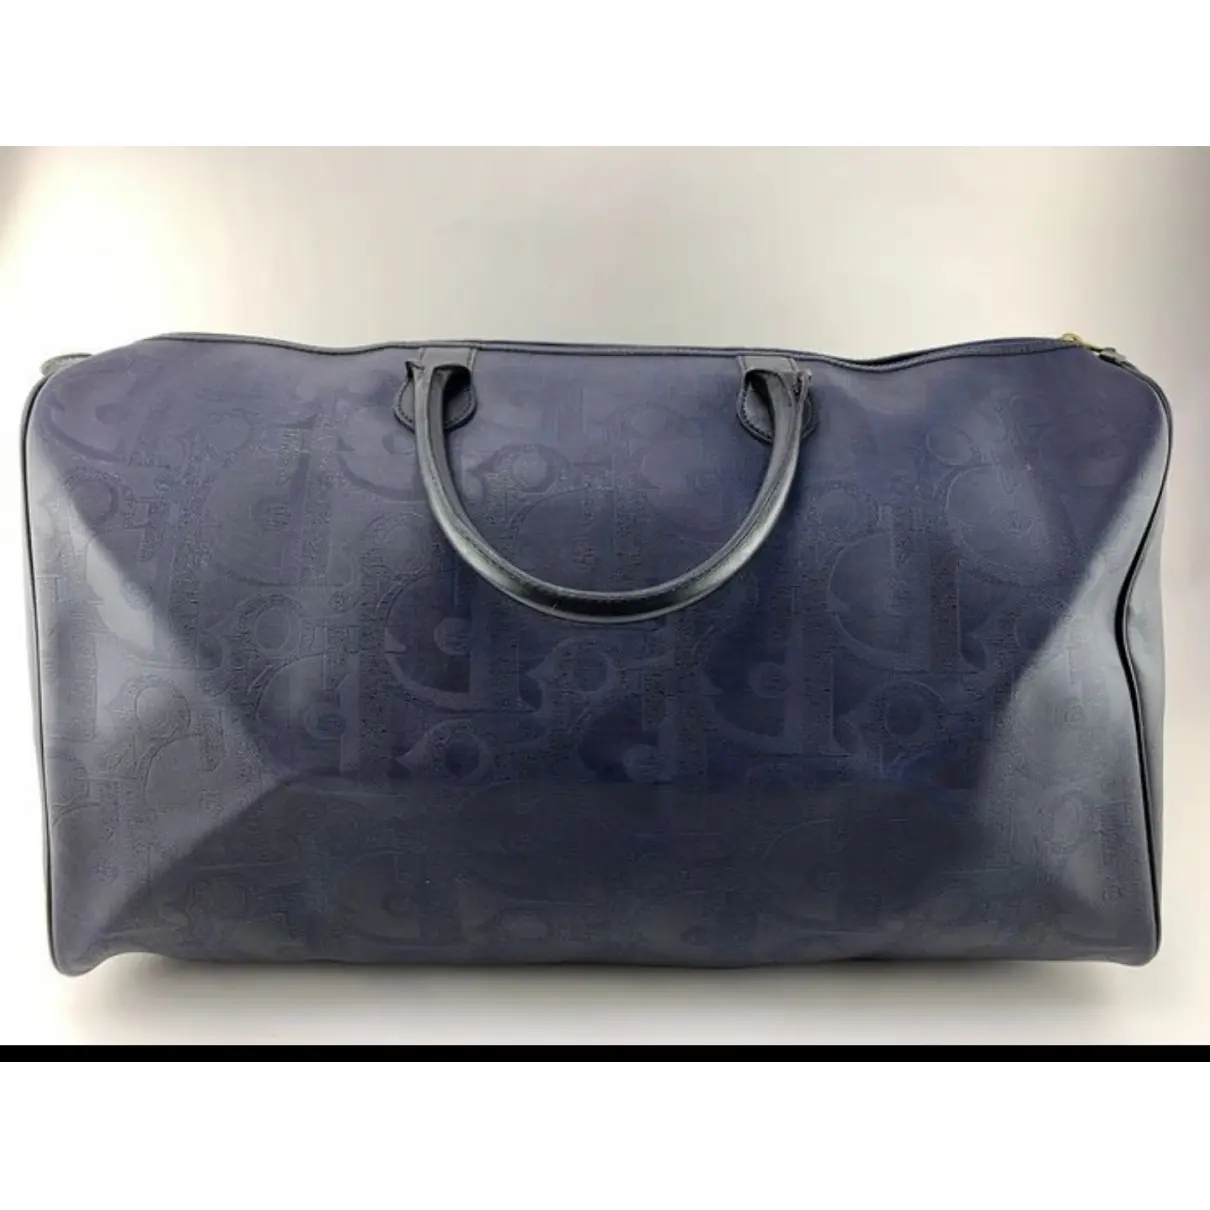 Buy Dior Leather handbag online - Vintage